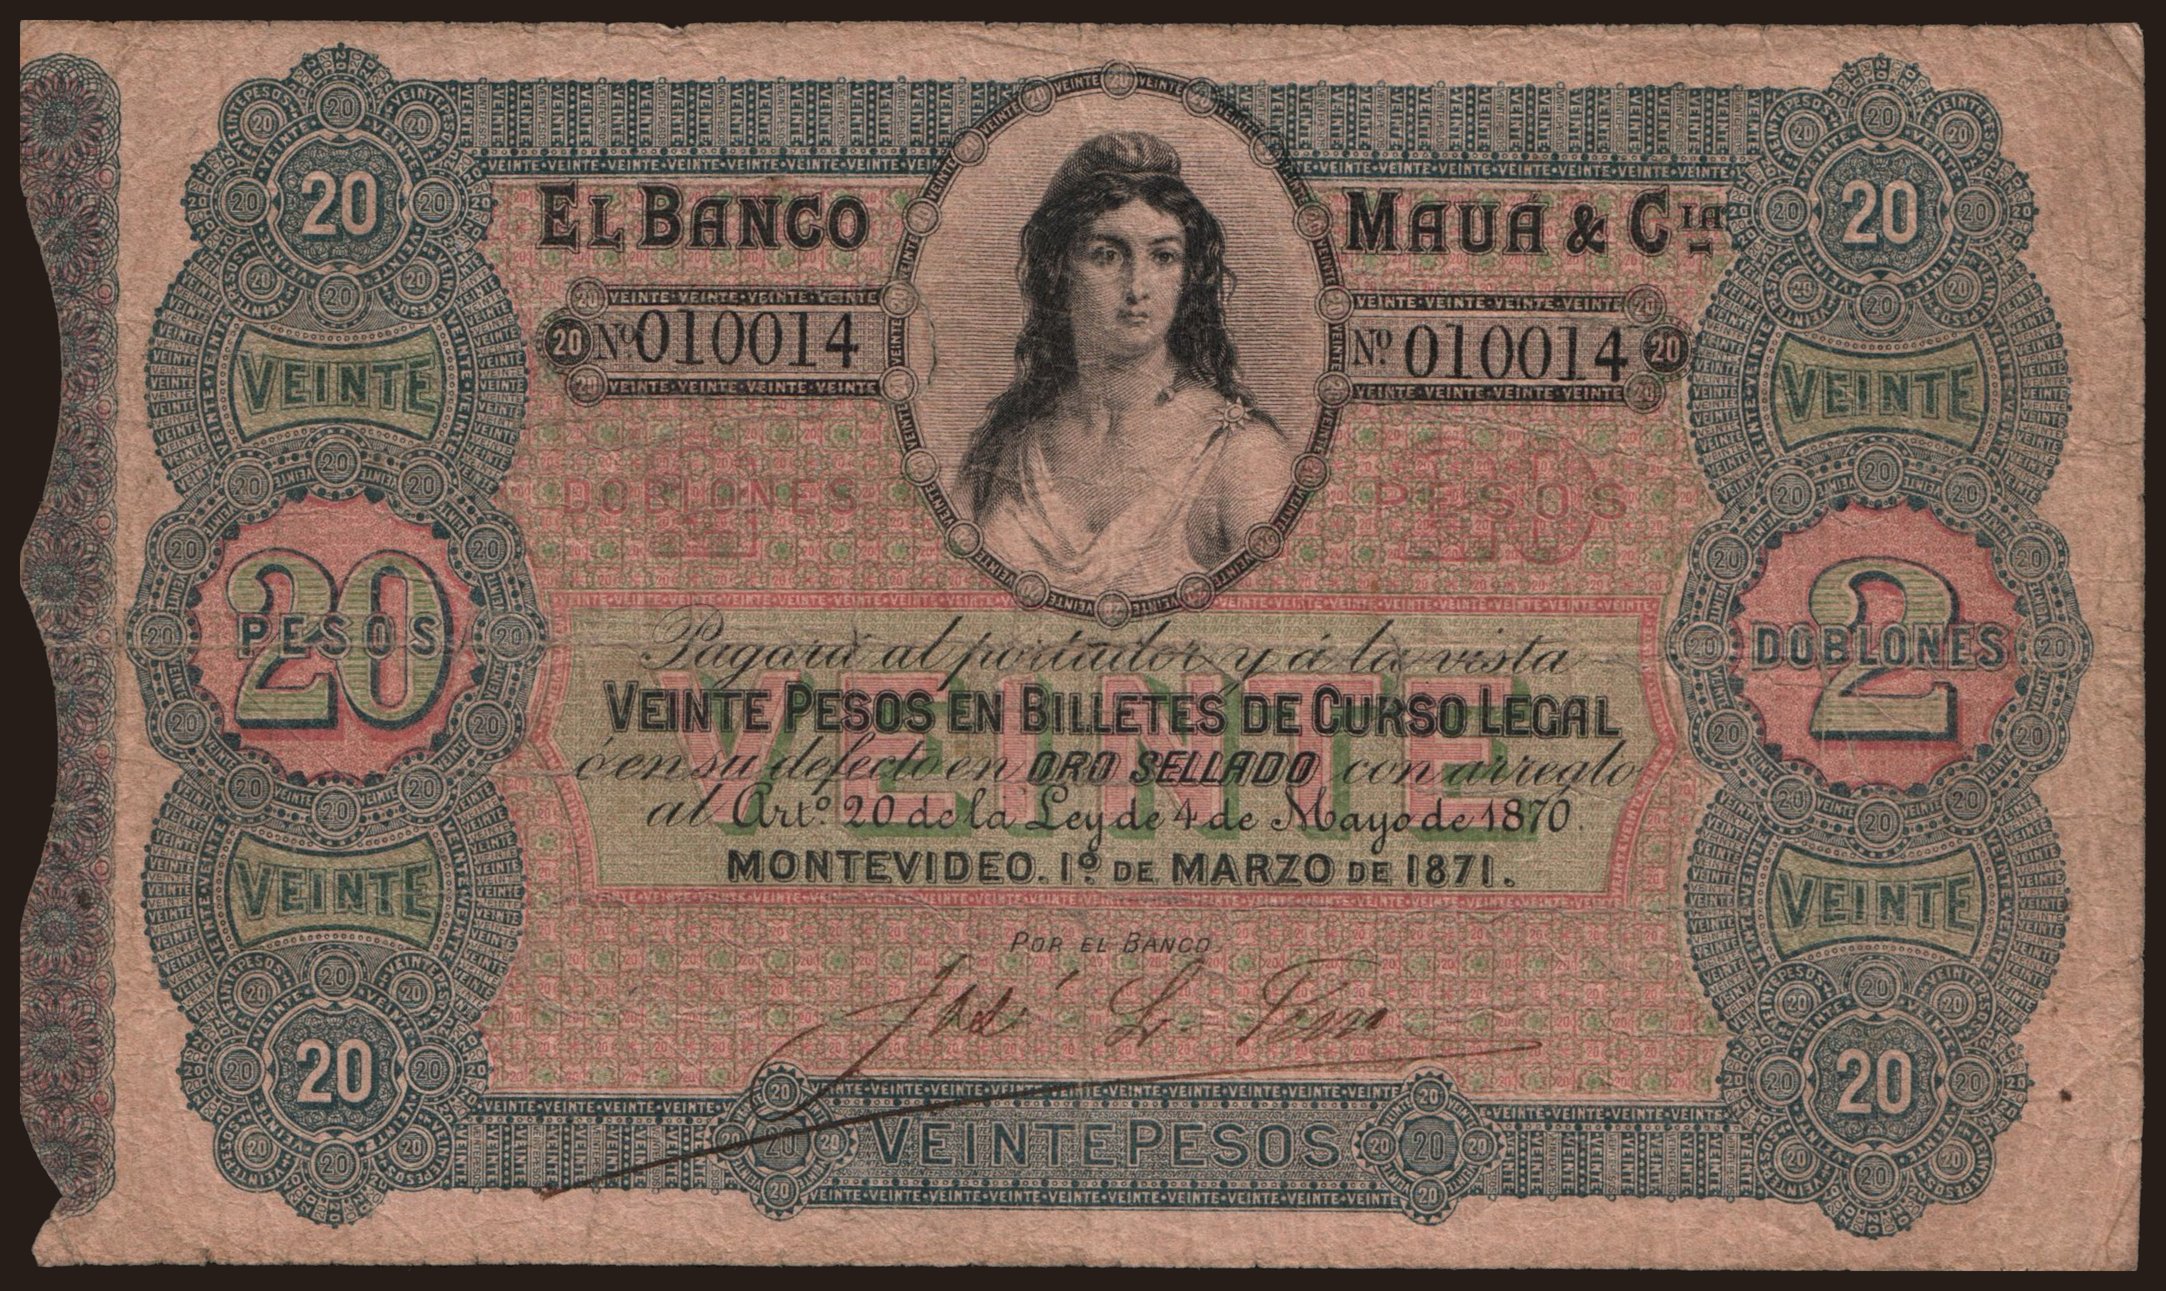 El Banco Maua & Cia, 20 pesos, 1871